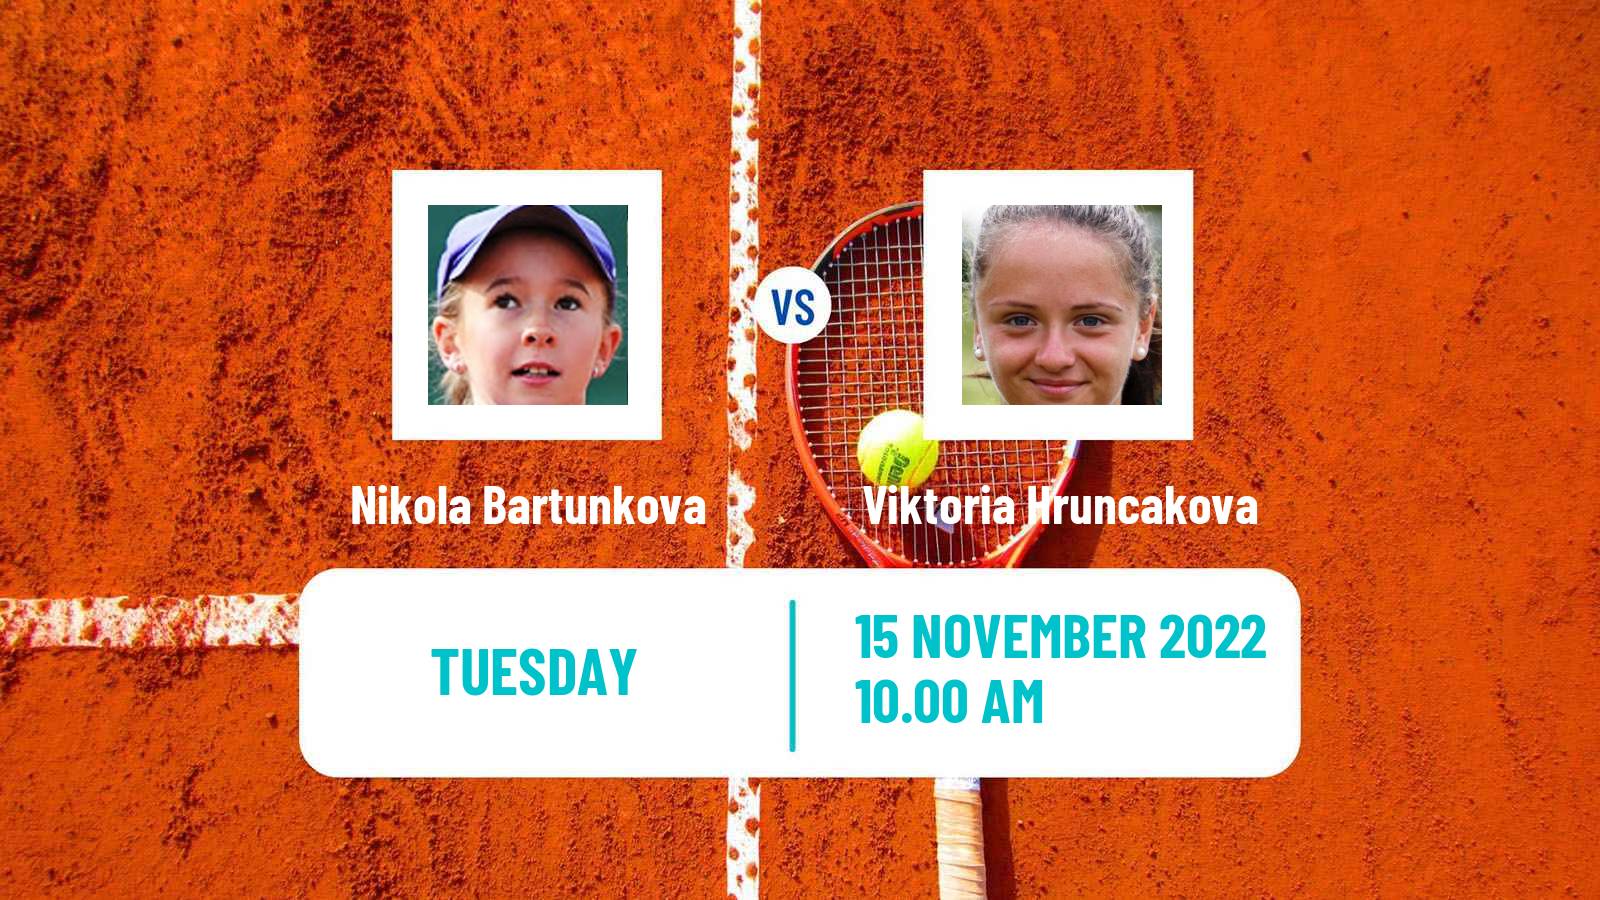 Tennis ITF Tournaments Nikola Bartunkova - Viktoria Hruncakova